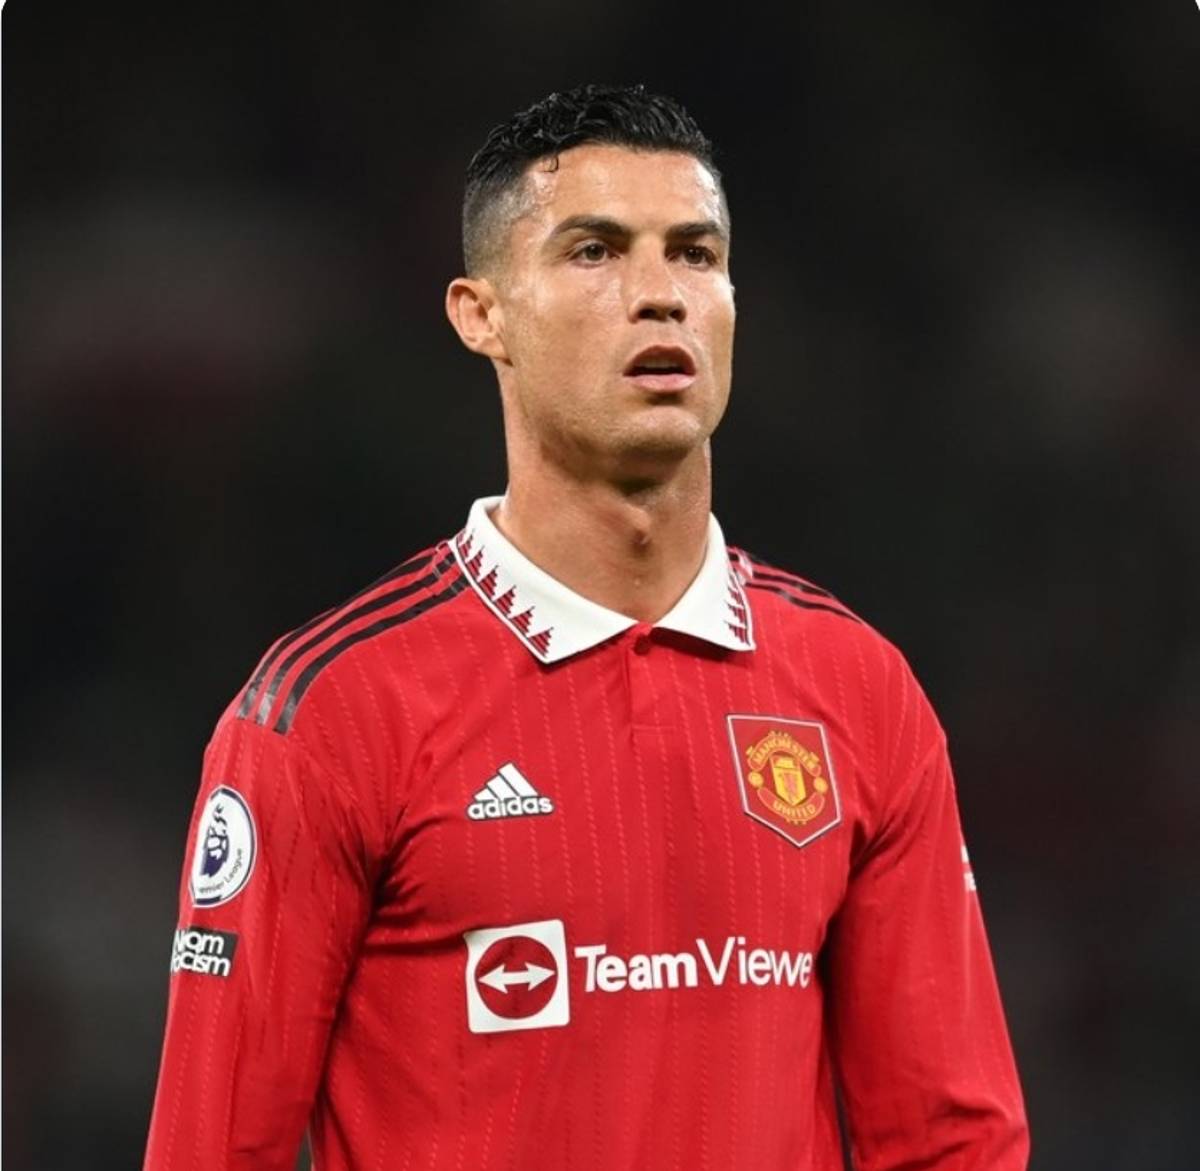 El Manchester United anunció este martes que el portugués Cristiano Ronaldo abandona el club inglés